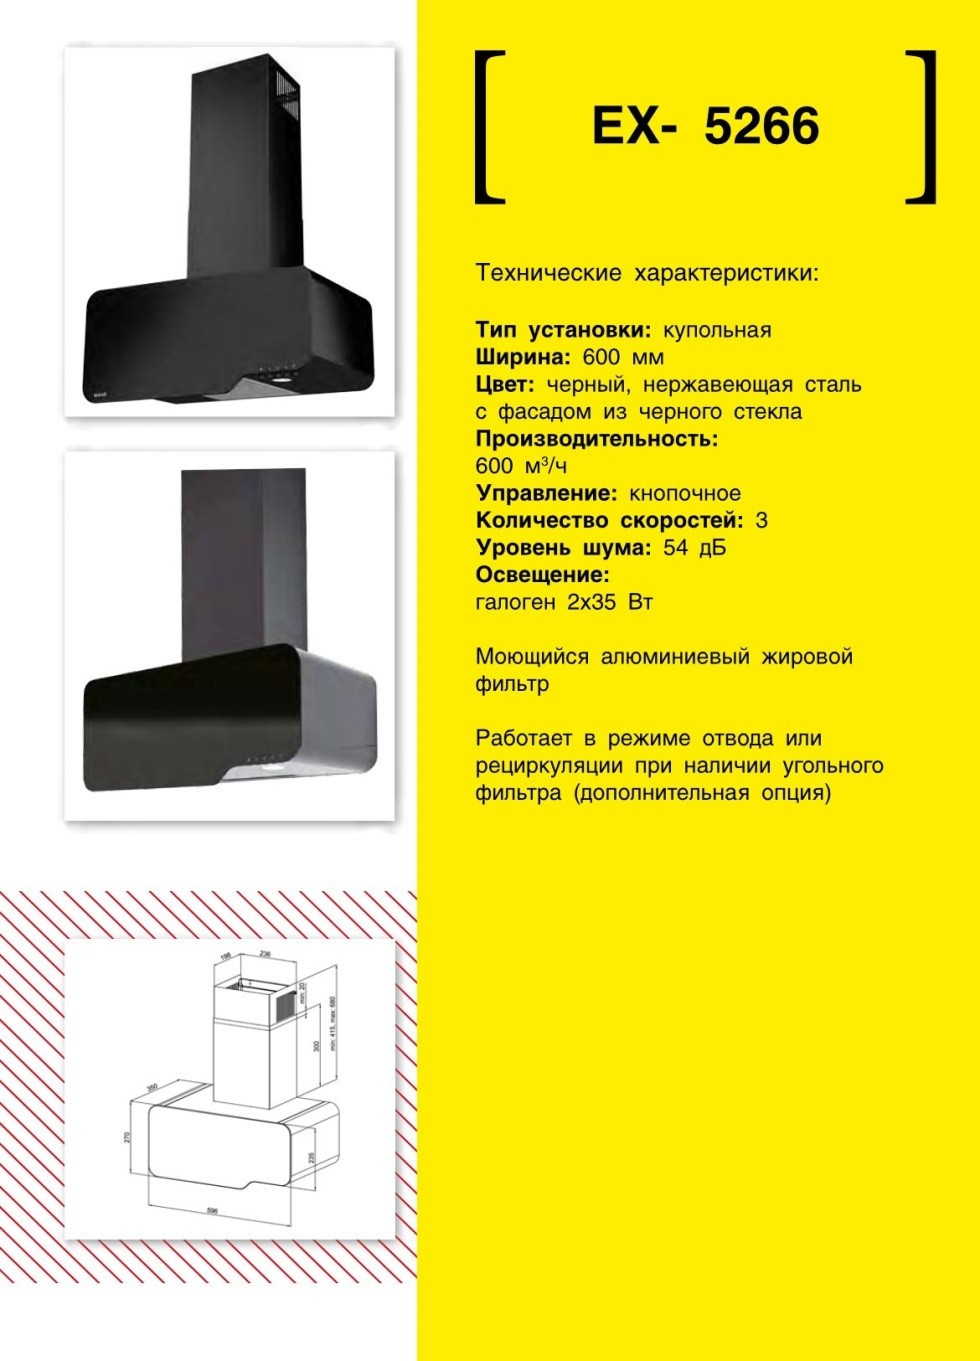 Купольная вытяжка EXITEQ EX 5266. Продажа встраиваемой техники в Беларуси недорого